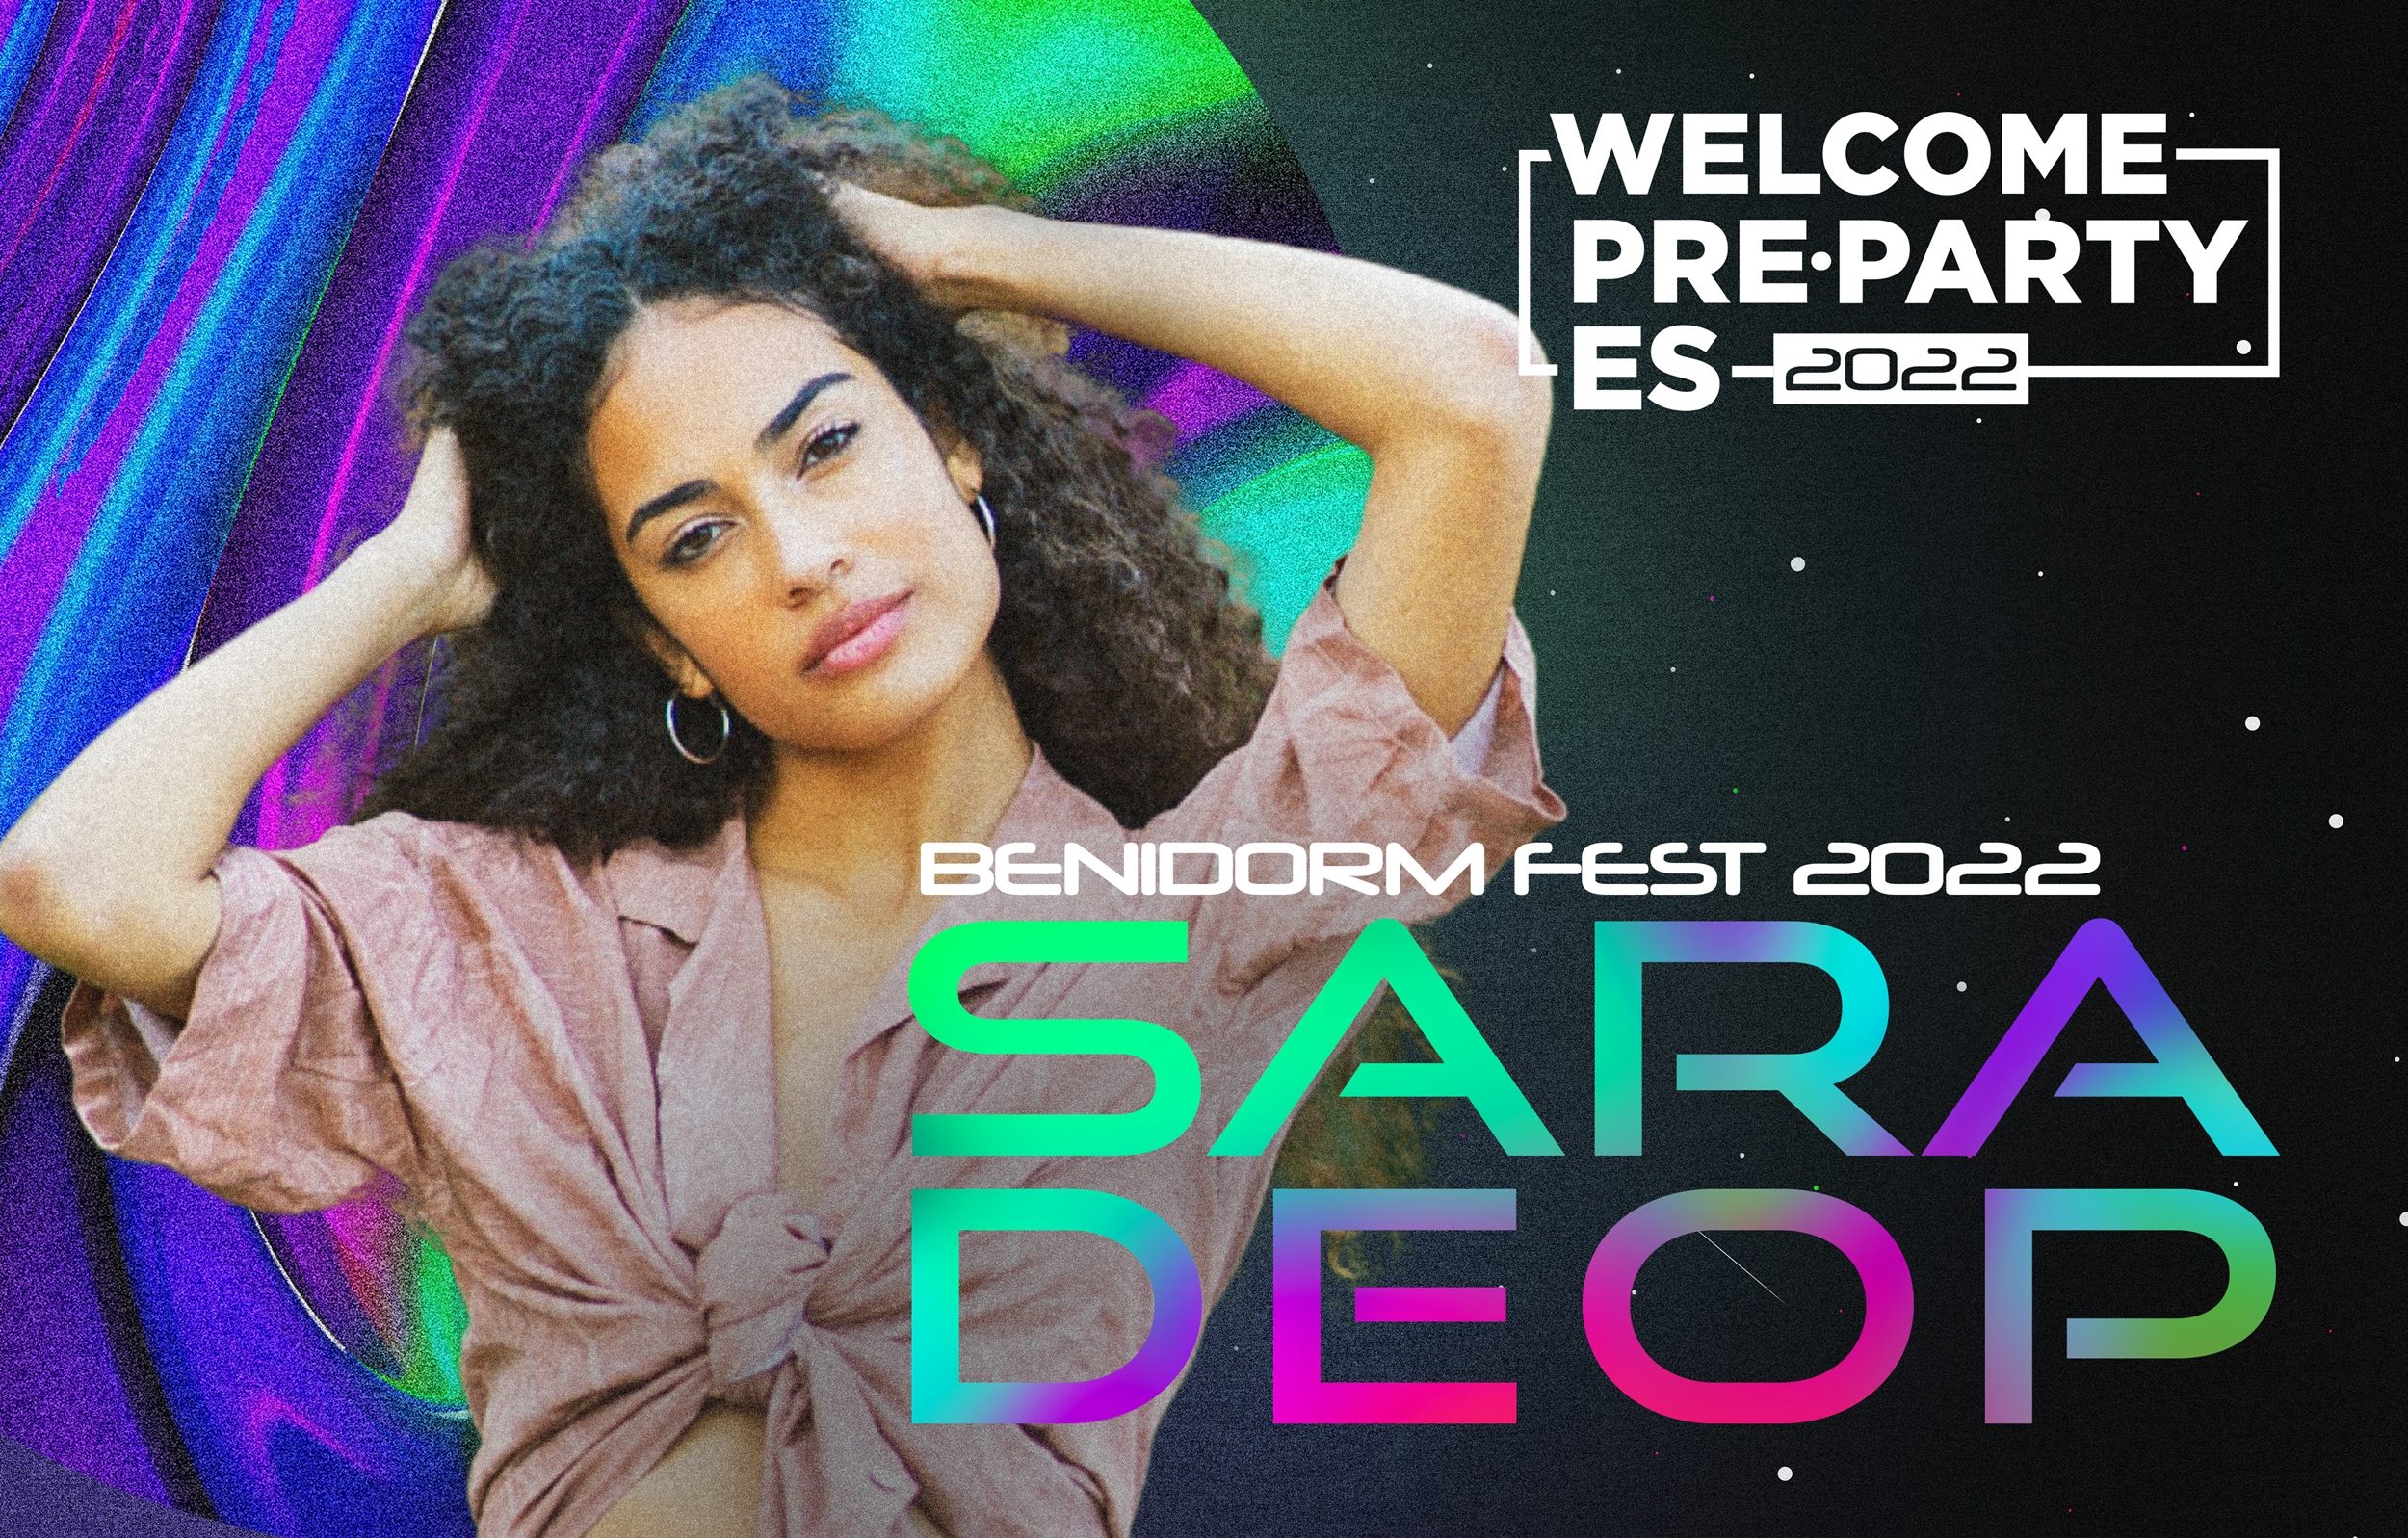 Make You Say: ¡Sara Deop se apunta a la gran fiesta de Eurovisión en España!